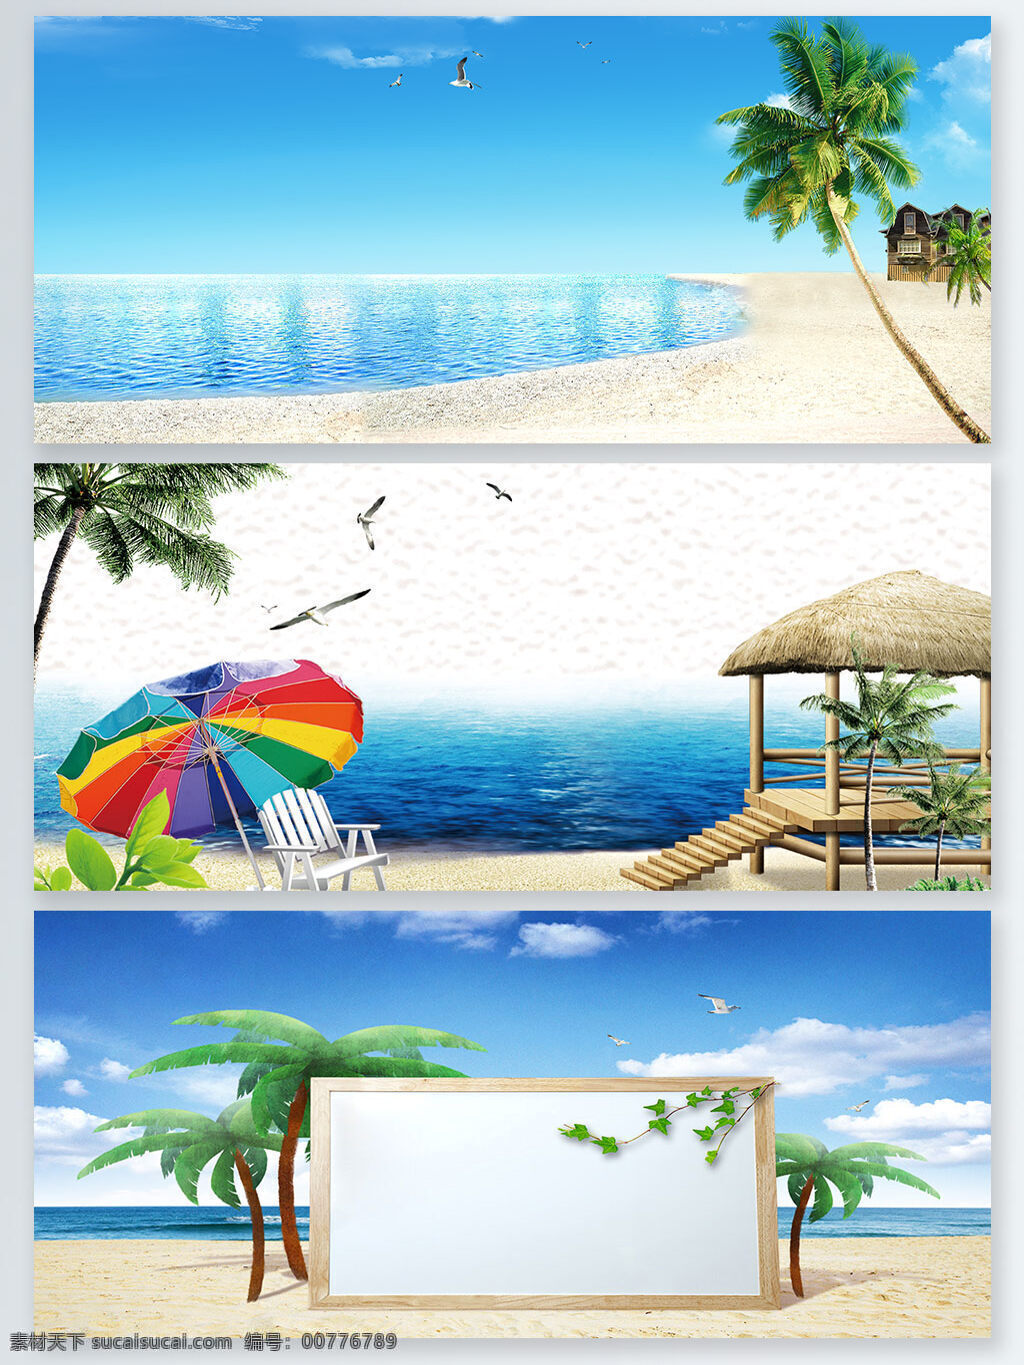 夏日 海滩 自然风光 展板 背景 大海 海边 树木 沙滩 展板背景 遮阳伞 度假 海水 海景 椰子树 绿树 草房